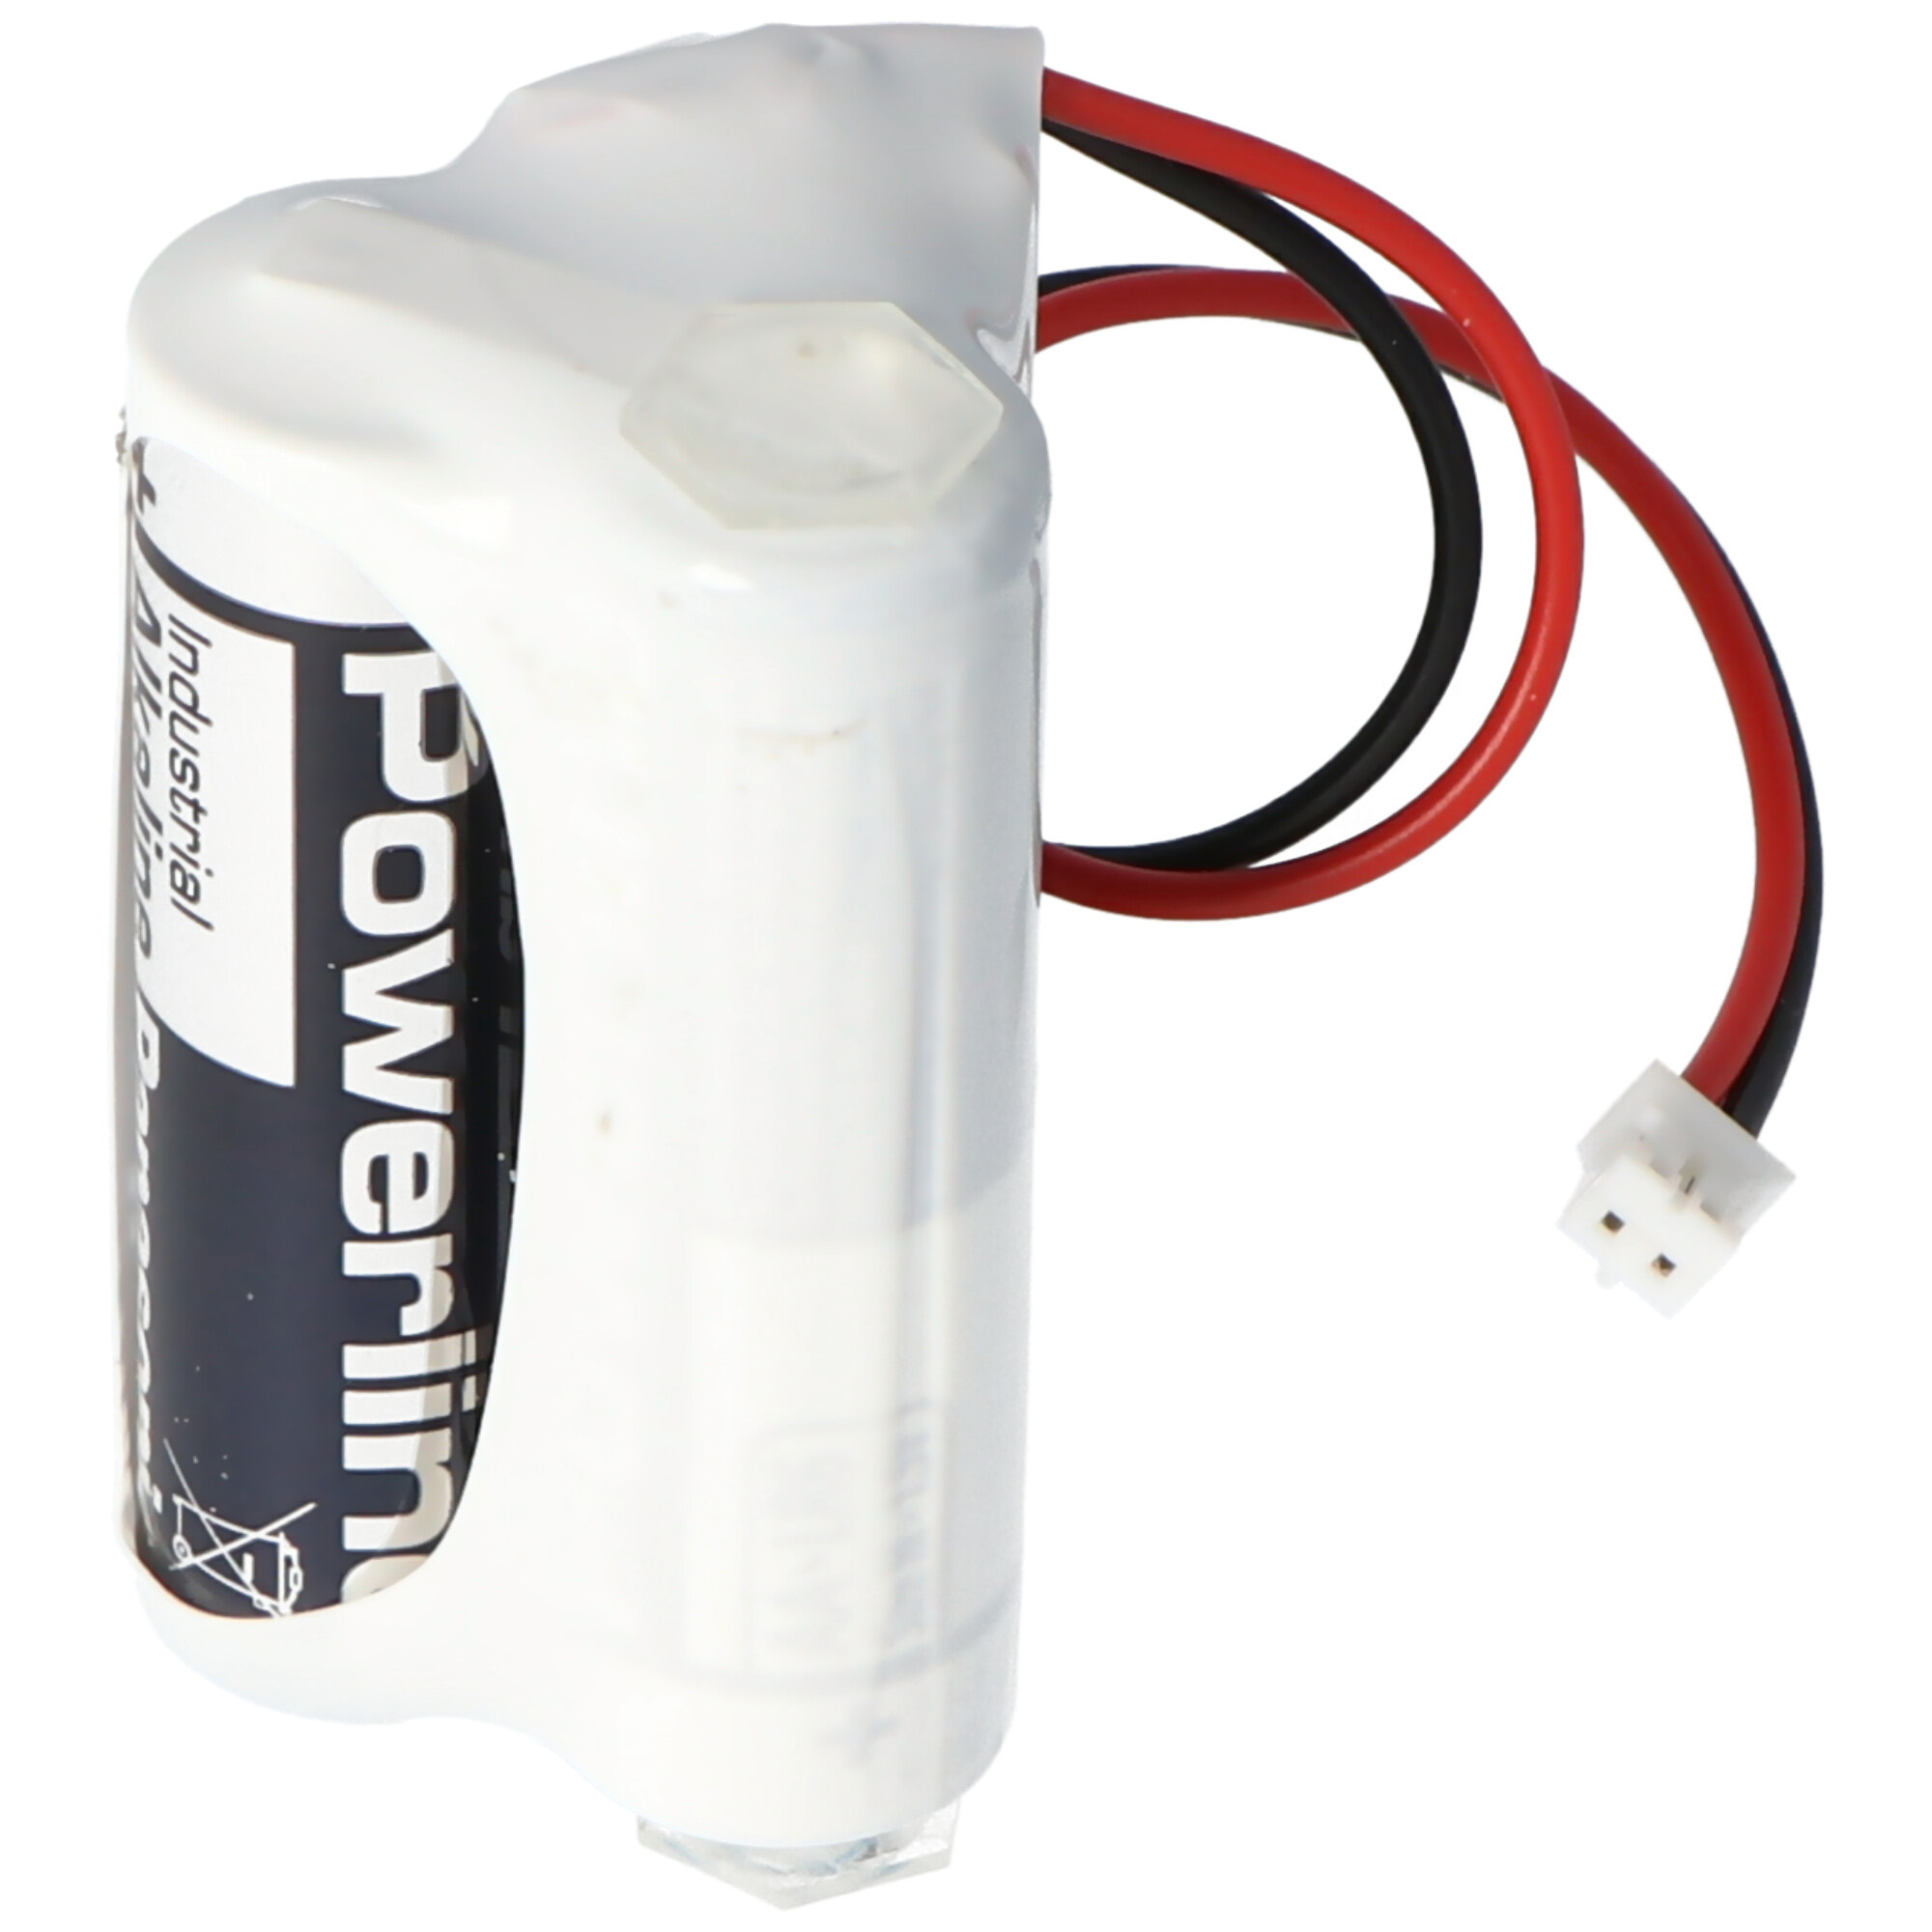 Ersatzbatterie für SAG 38450901 4,5 Volt Batteriepack für Schulte Schlagbaum LR06 Batteriepack F2+1 mit Kabel und Stecker